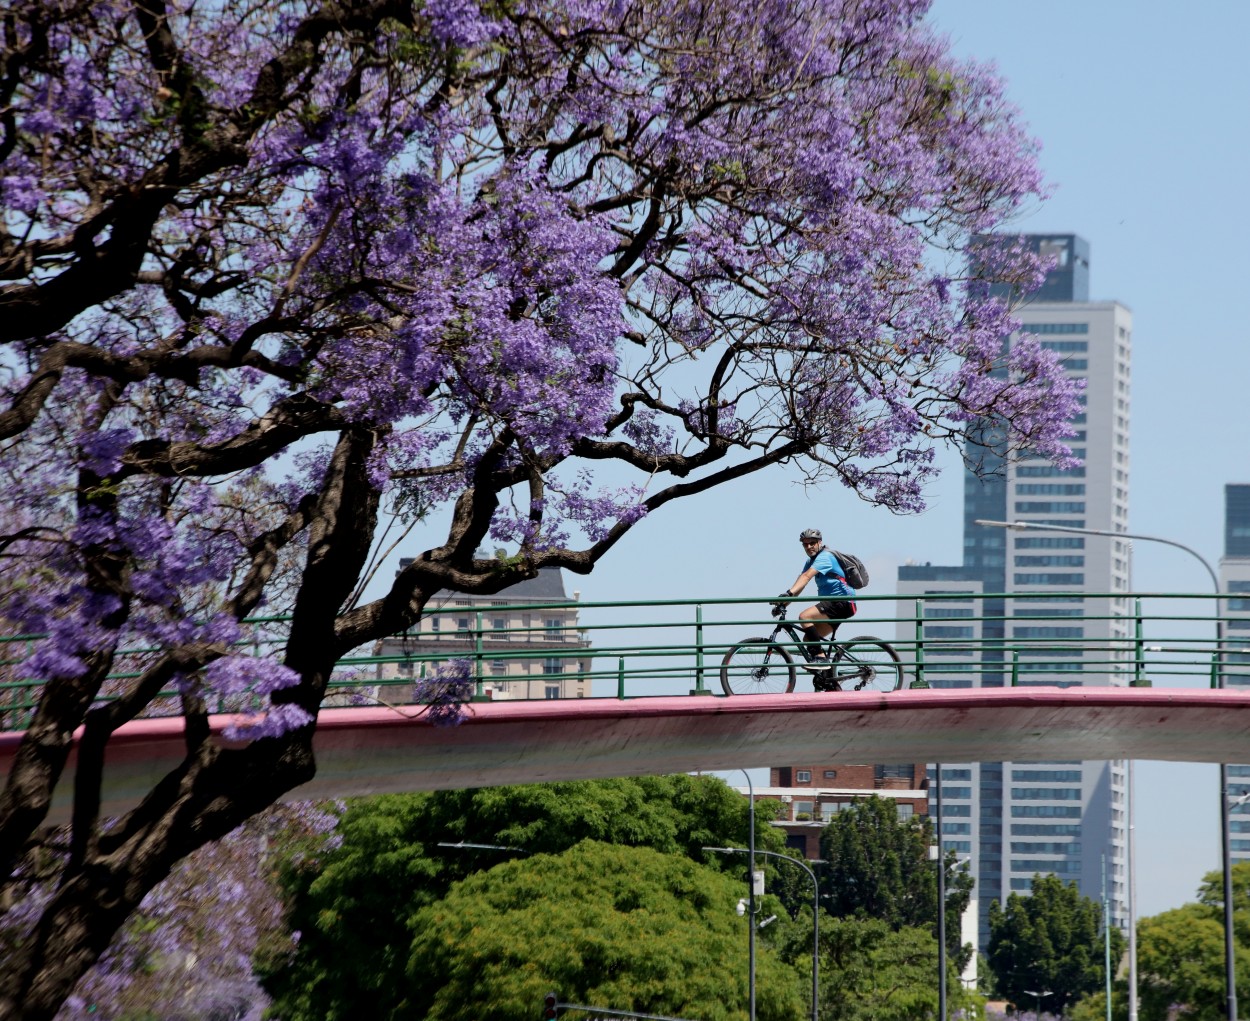 "Ciclista sobre el puente." de Francisco Luis Azpiroz Costa